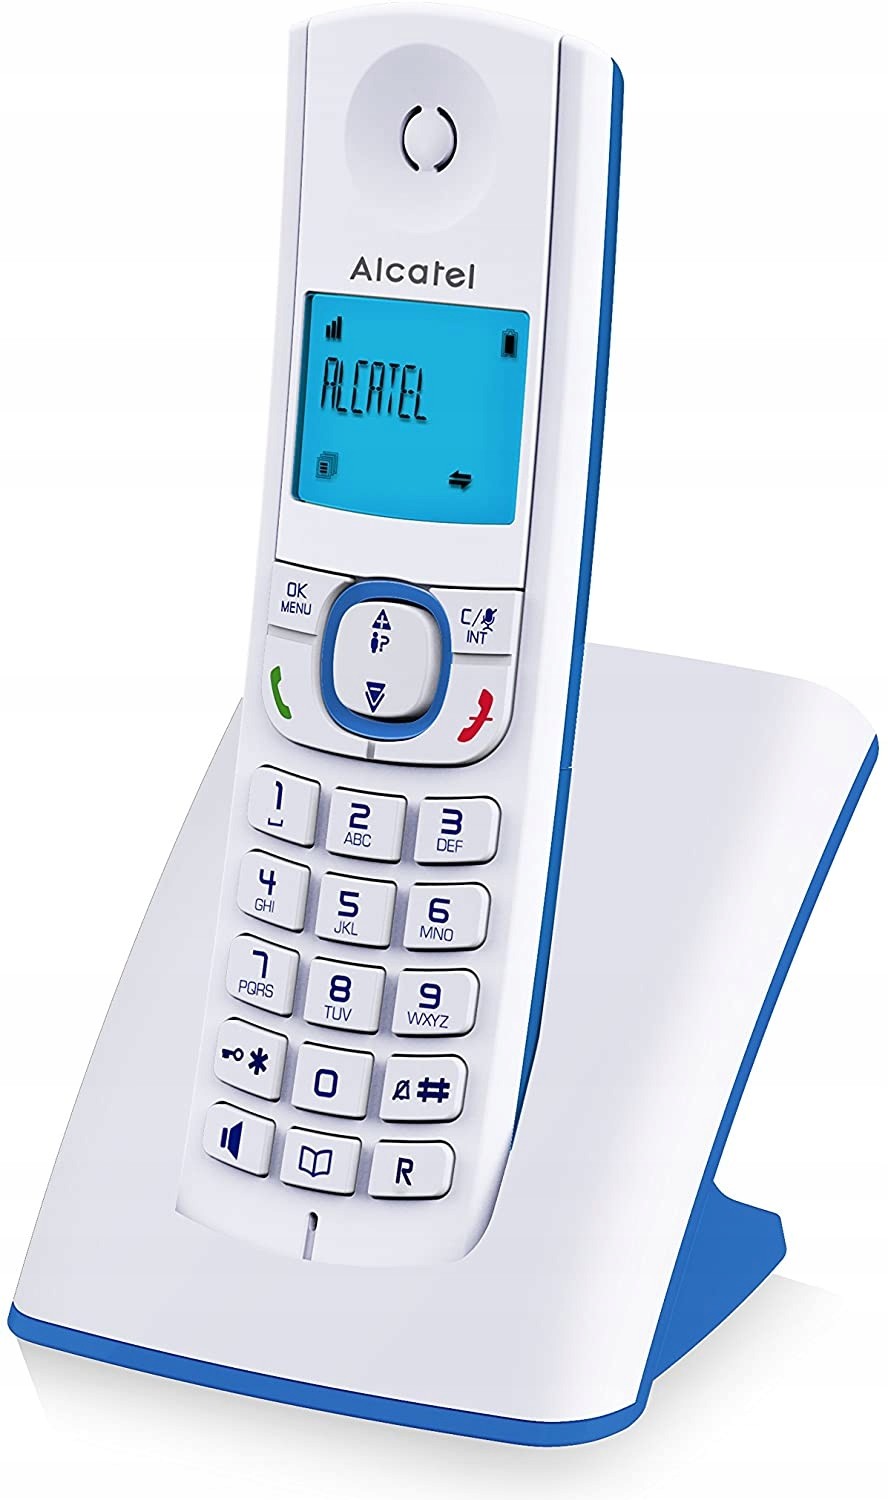 Alcatel bezdrátový telefon 3700601417005